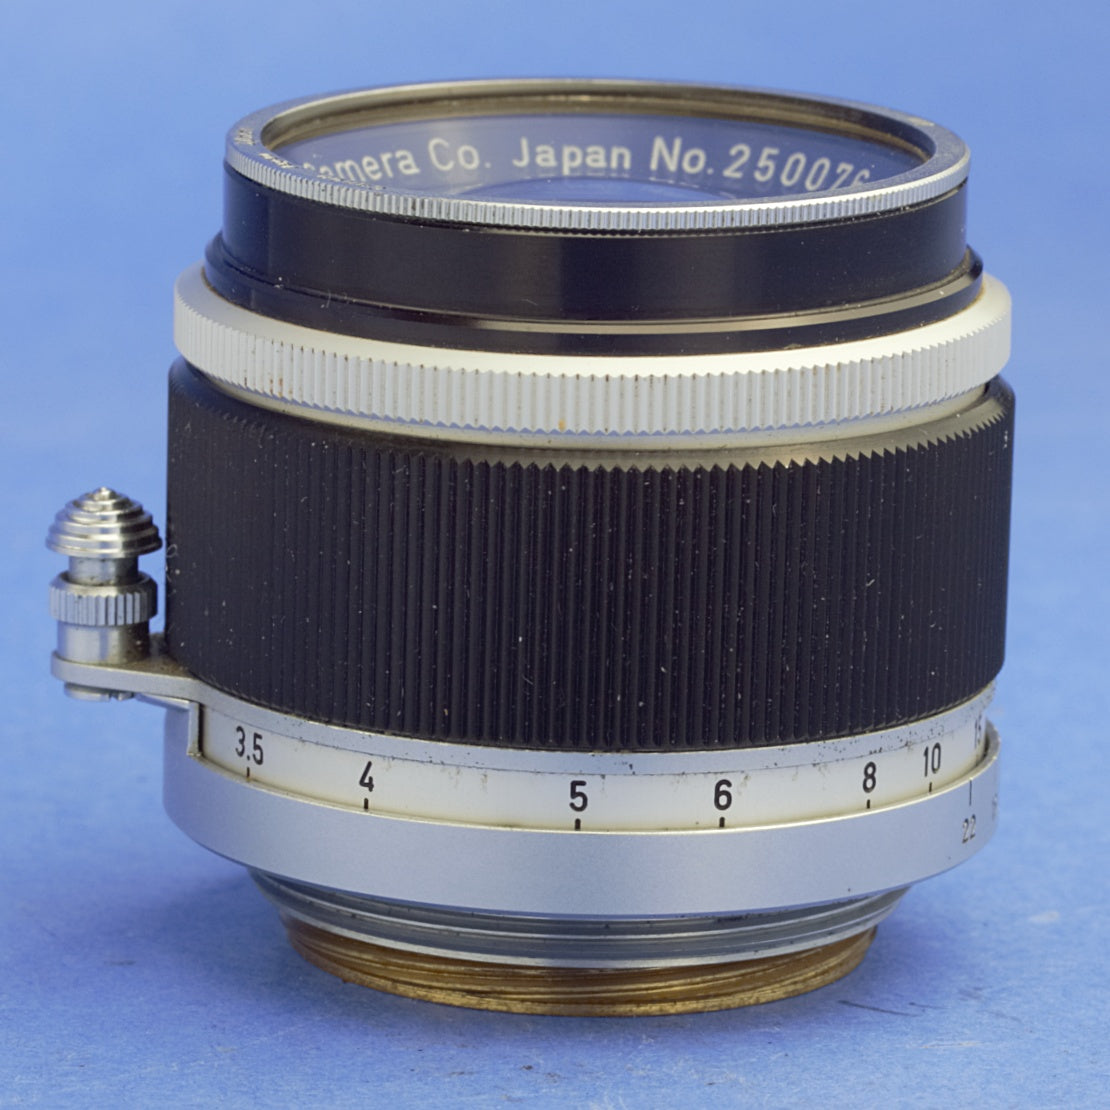 Canon 50mm 1.8 Rangefinder Lens